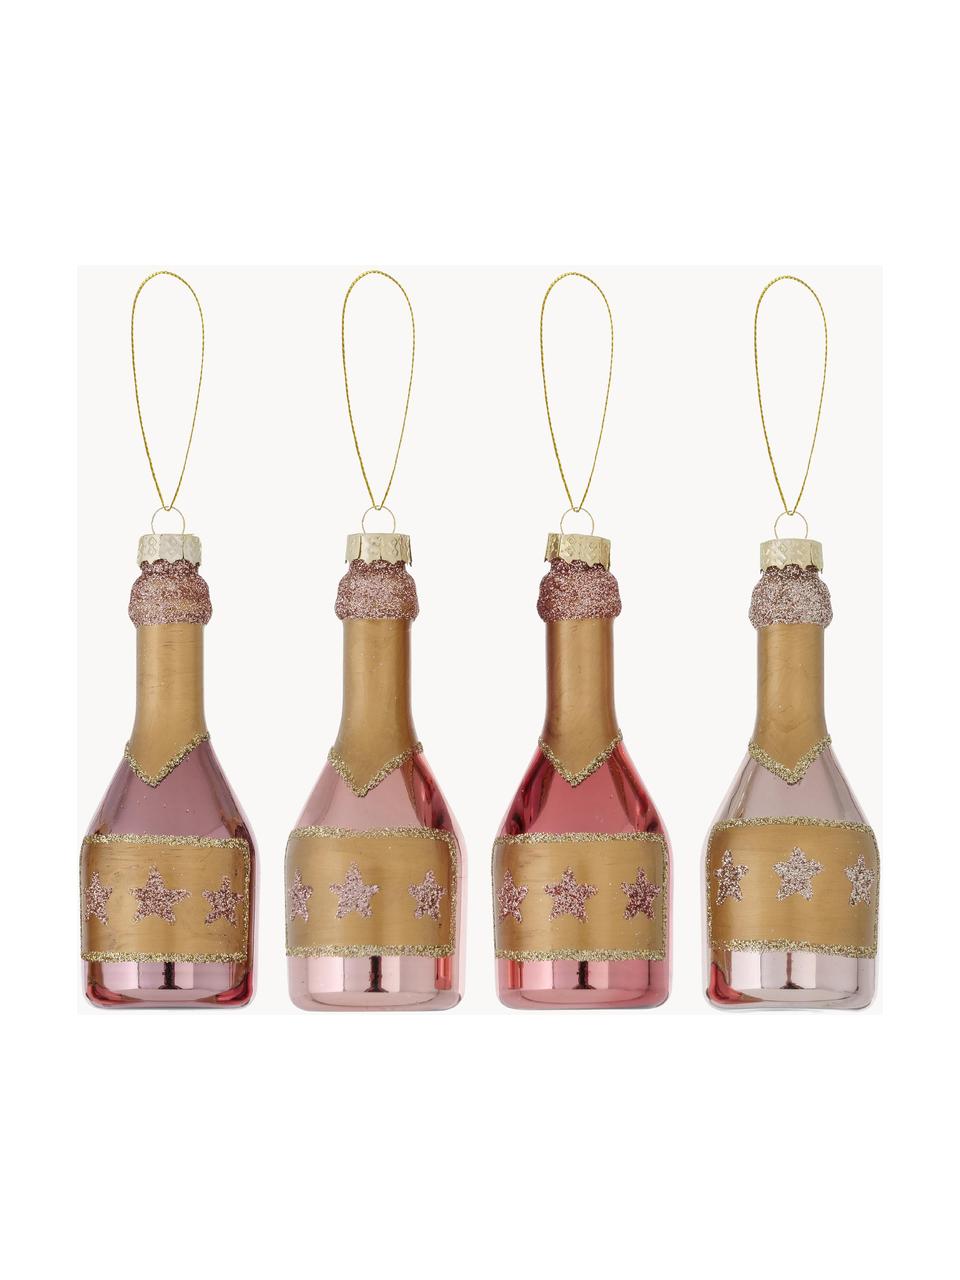 Baumanhänger-Set Champagne, 4er-Set, Rosatöne, Goldfarben, Ø 4 x H 10 cm